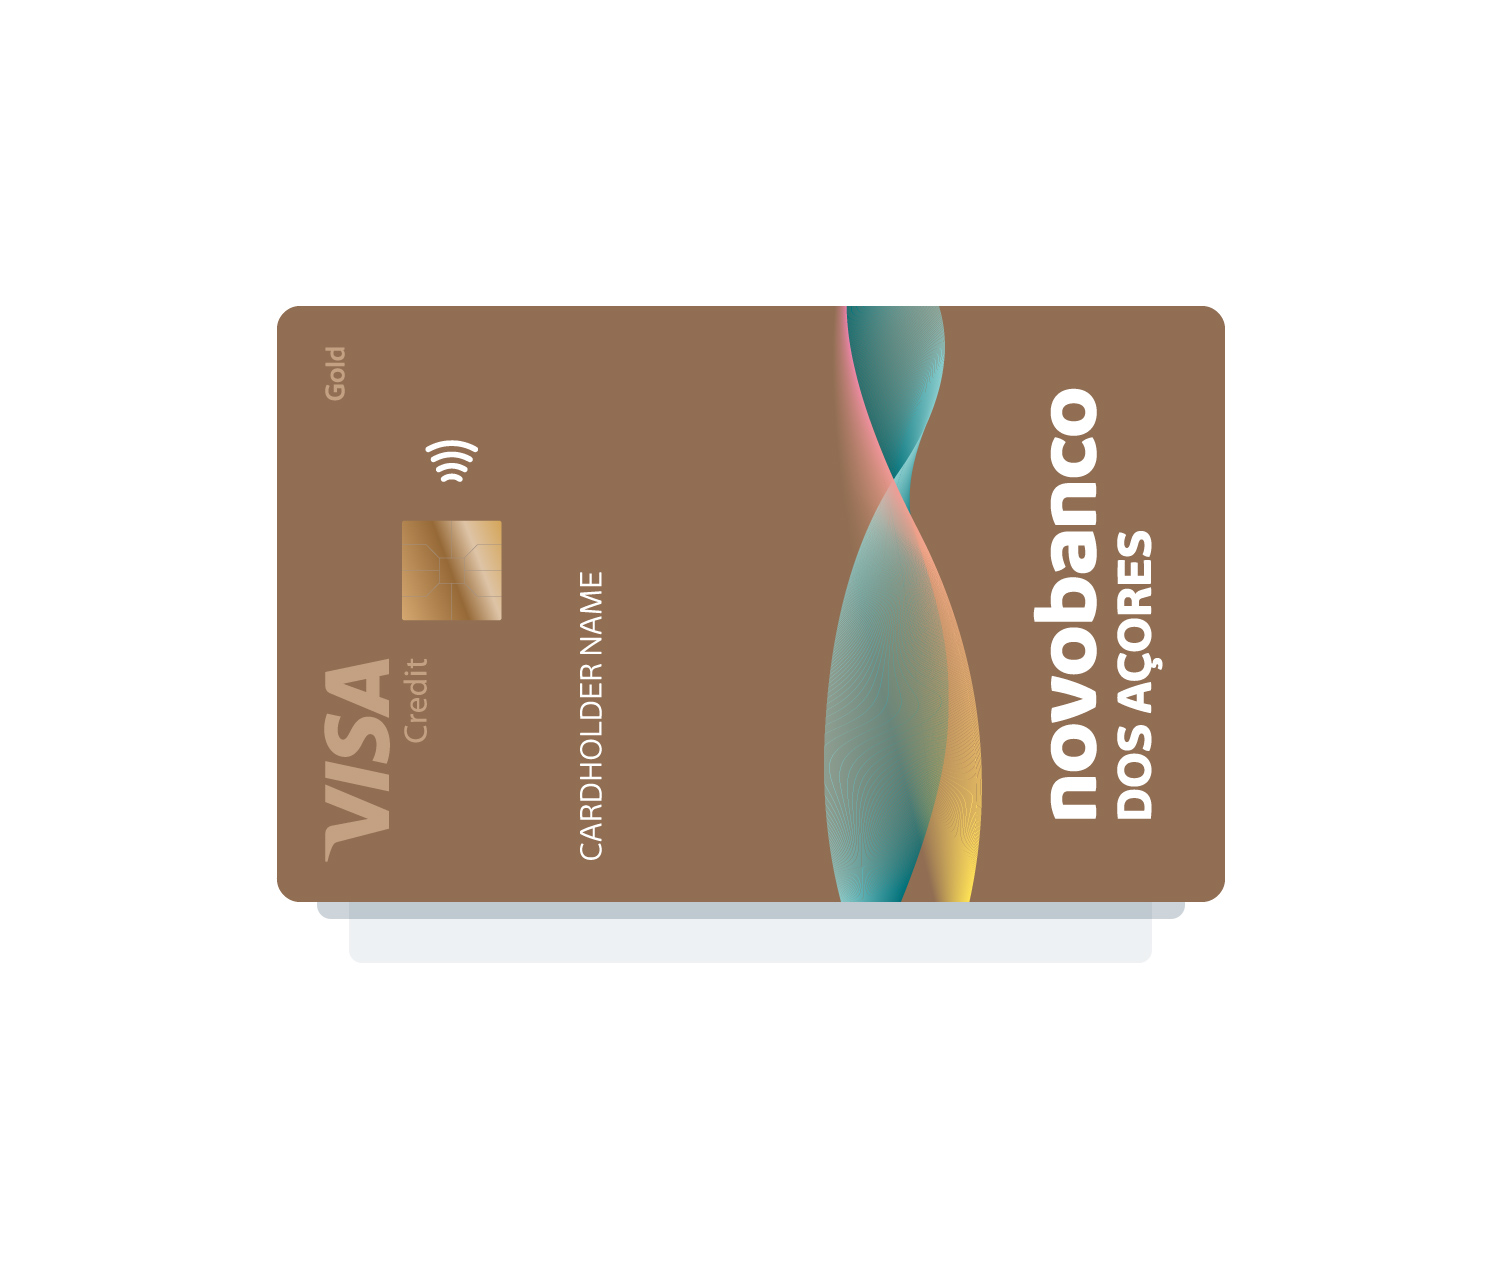 Cartões de Crédito  novobanco dos Açores